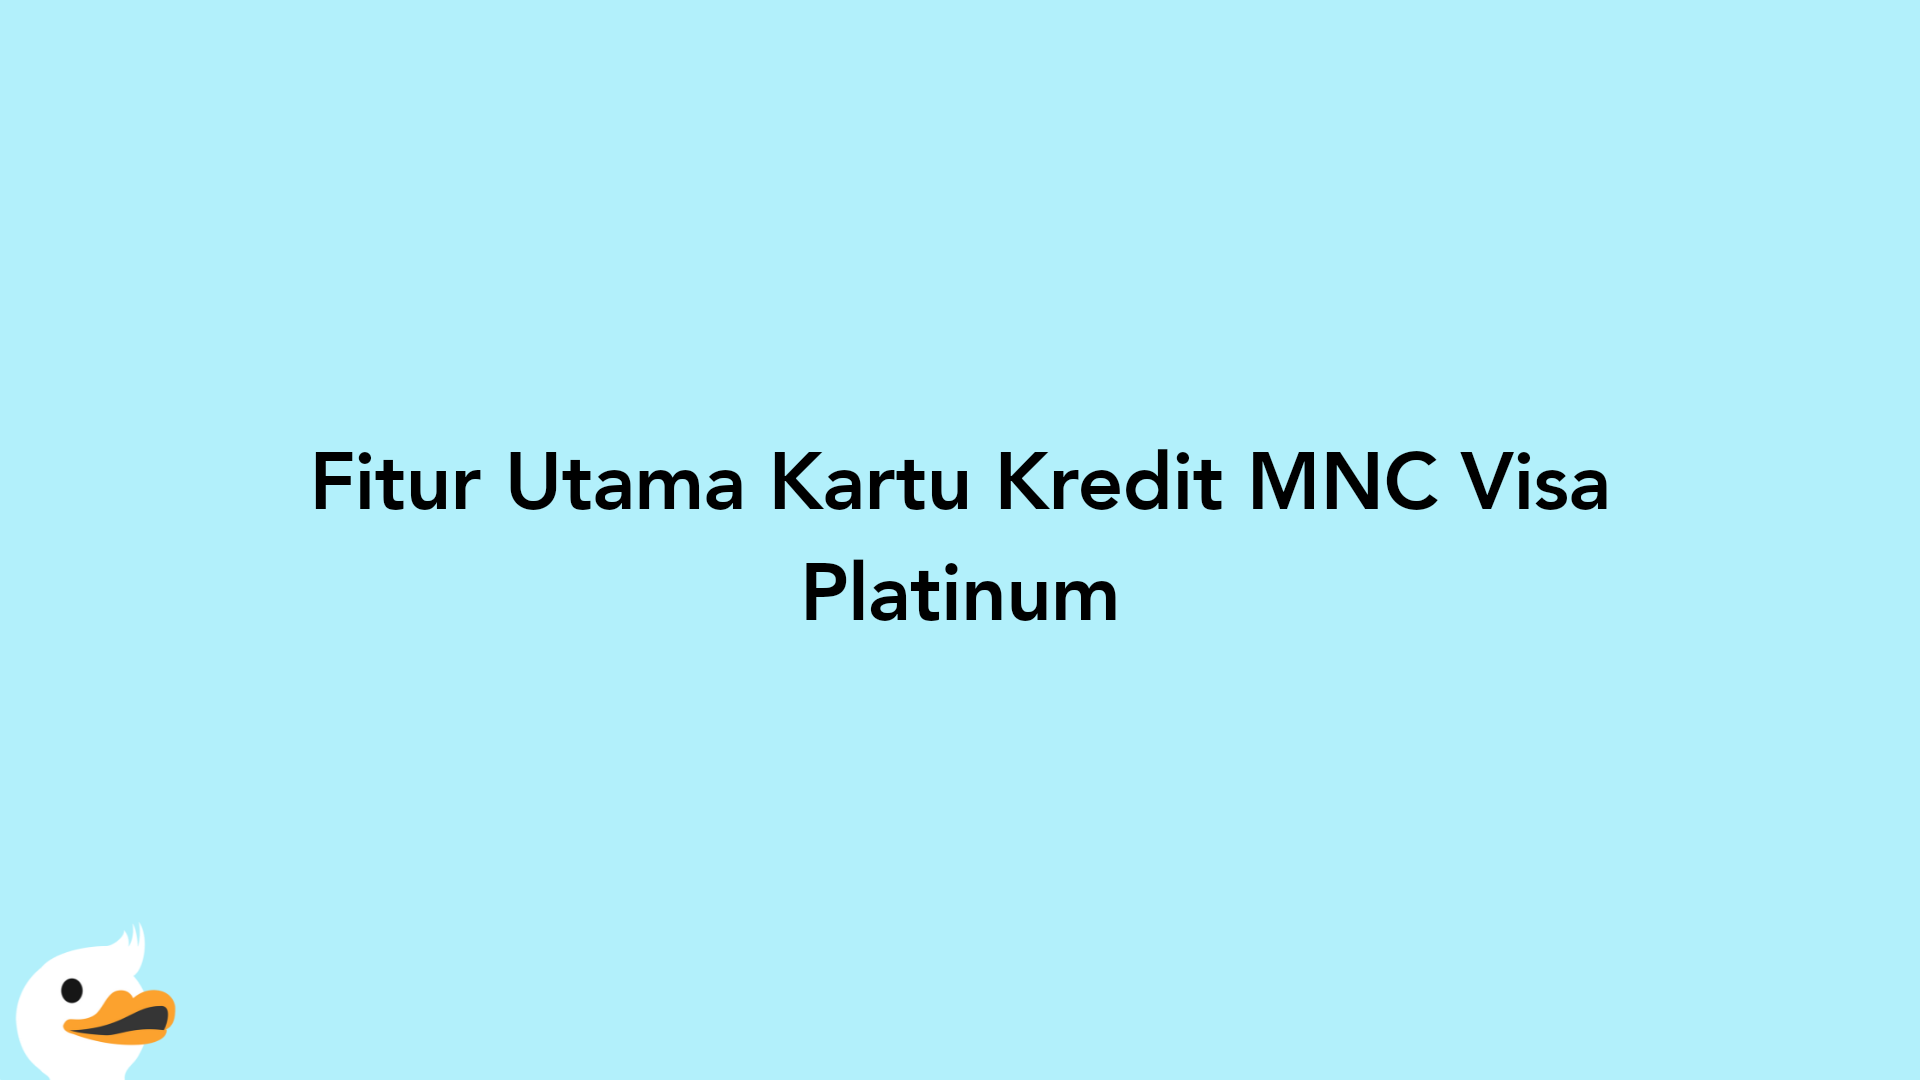 Fitur Utama Kartu Kredit MNC Visa Platinum